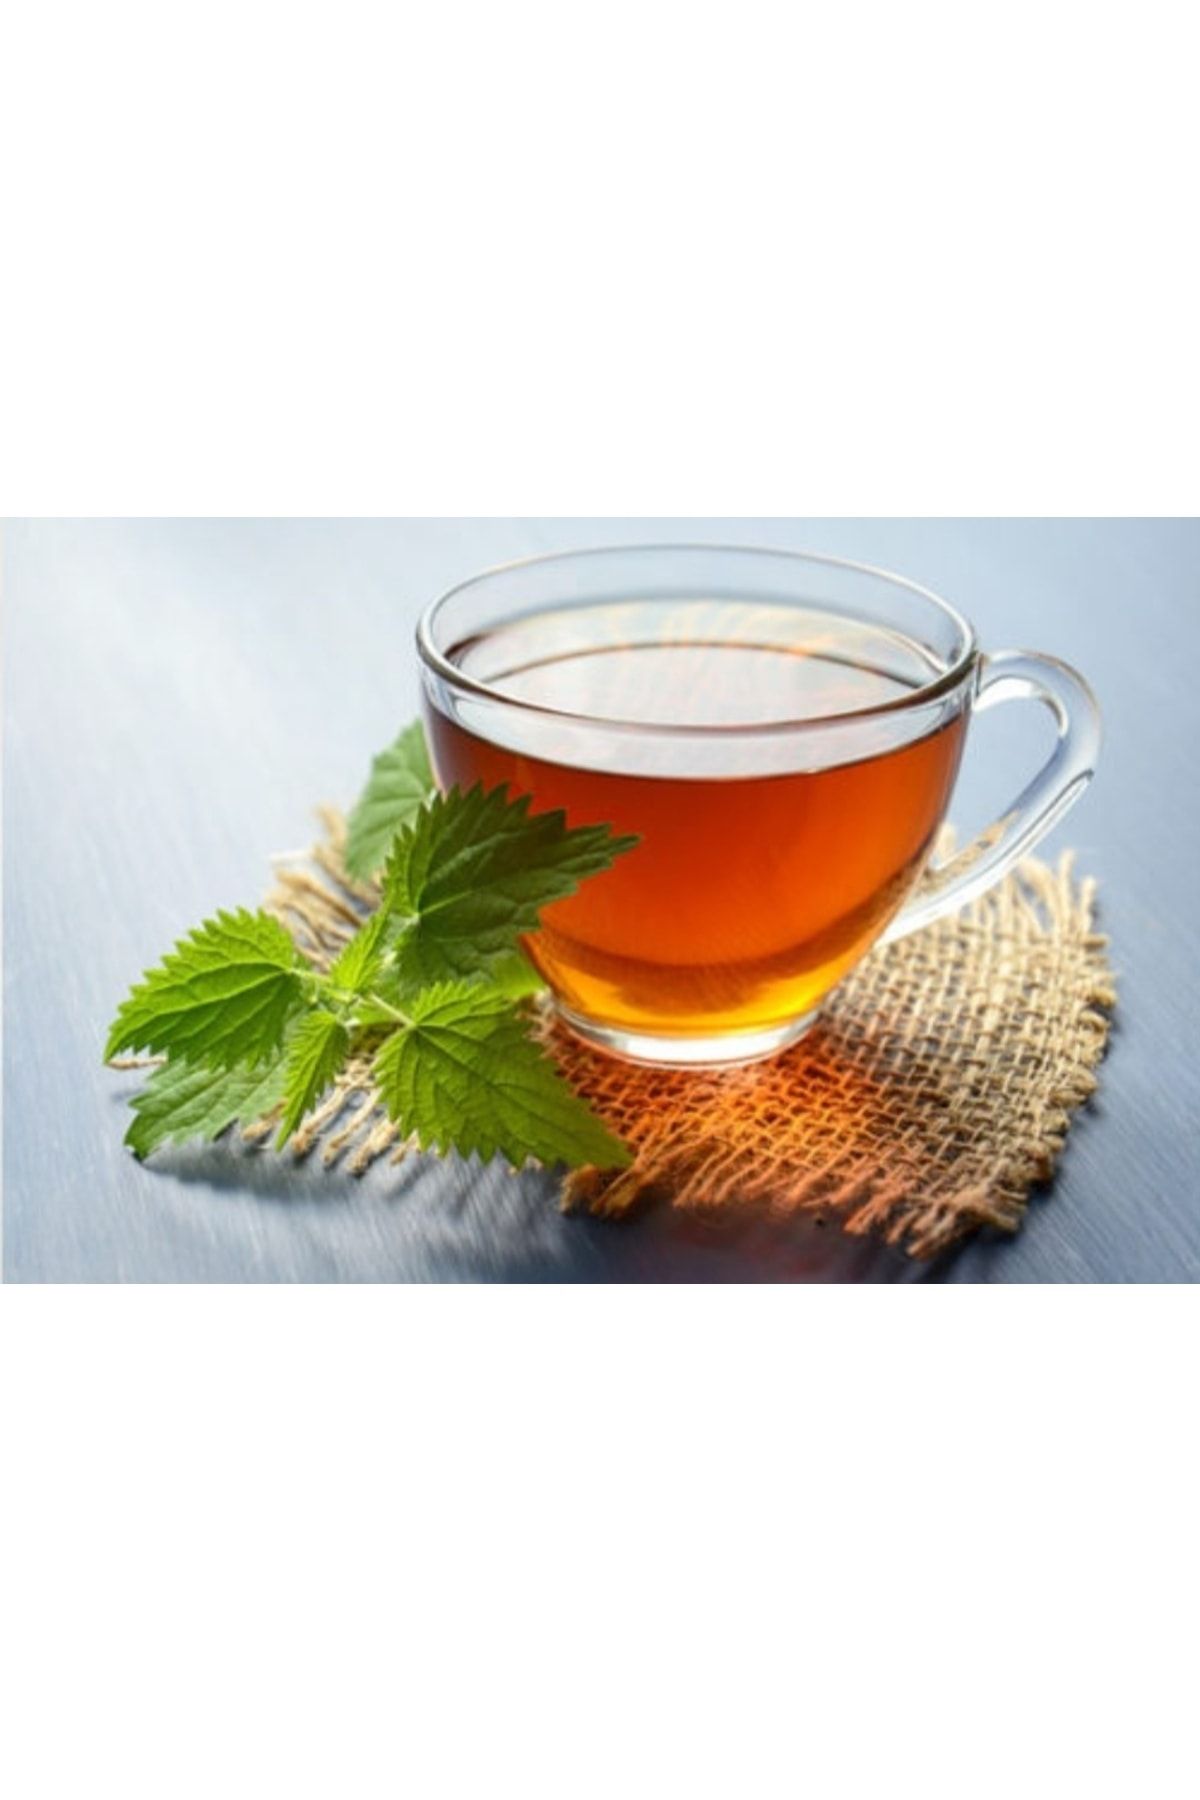 E&K ÇAY Yaş Isırgan Otu Çayı Doğal Çay (TAZE) 100gr